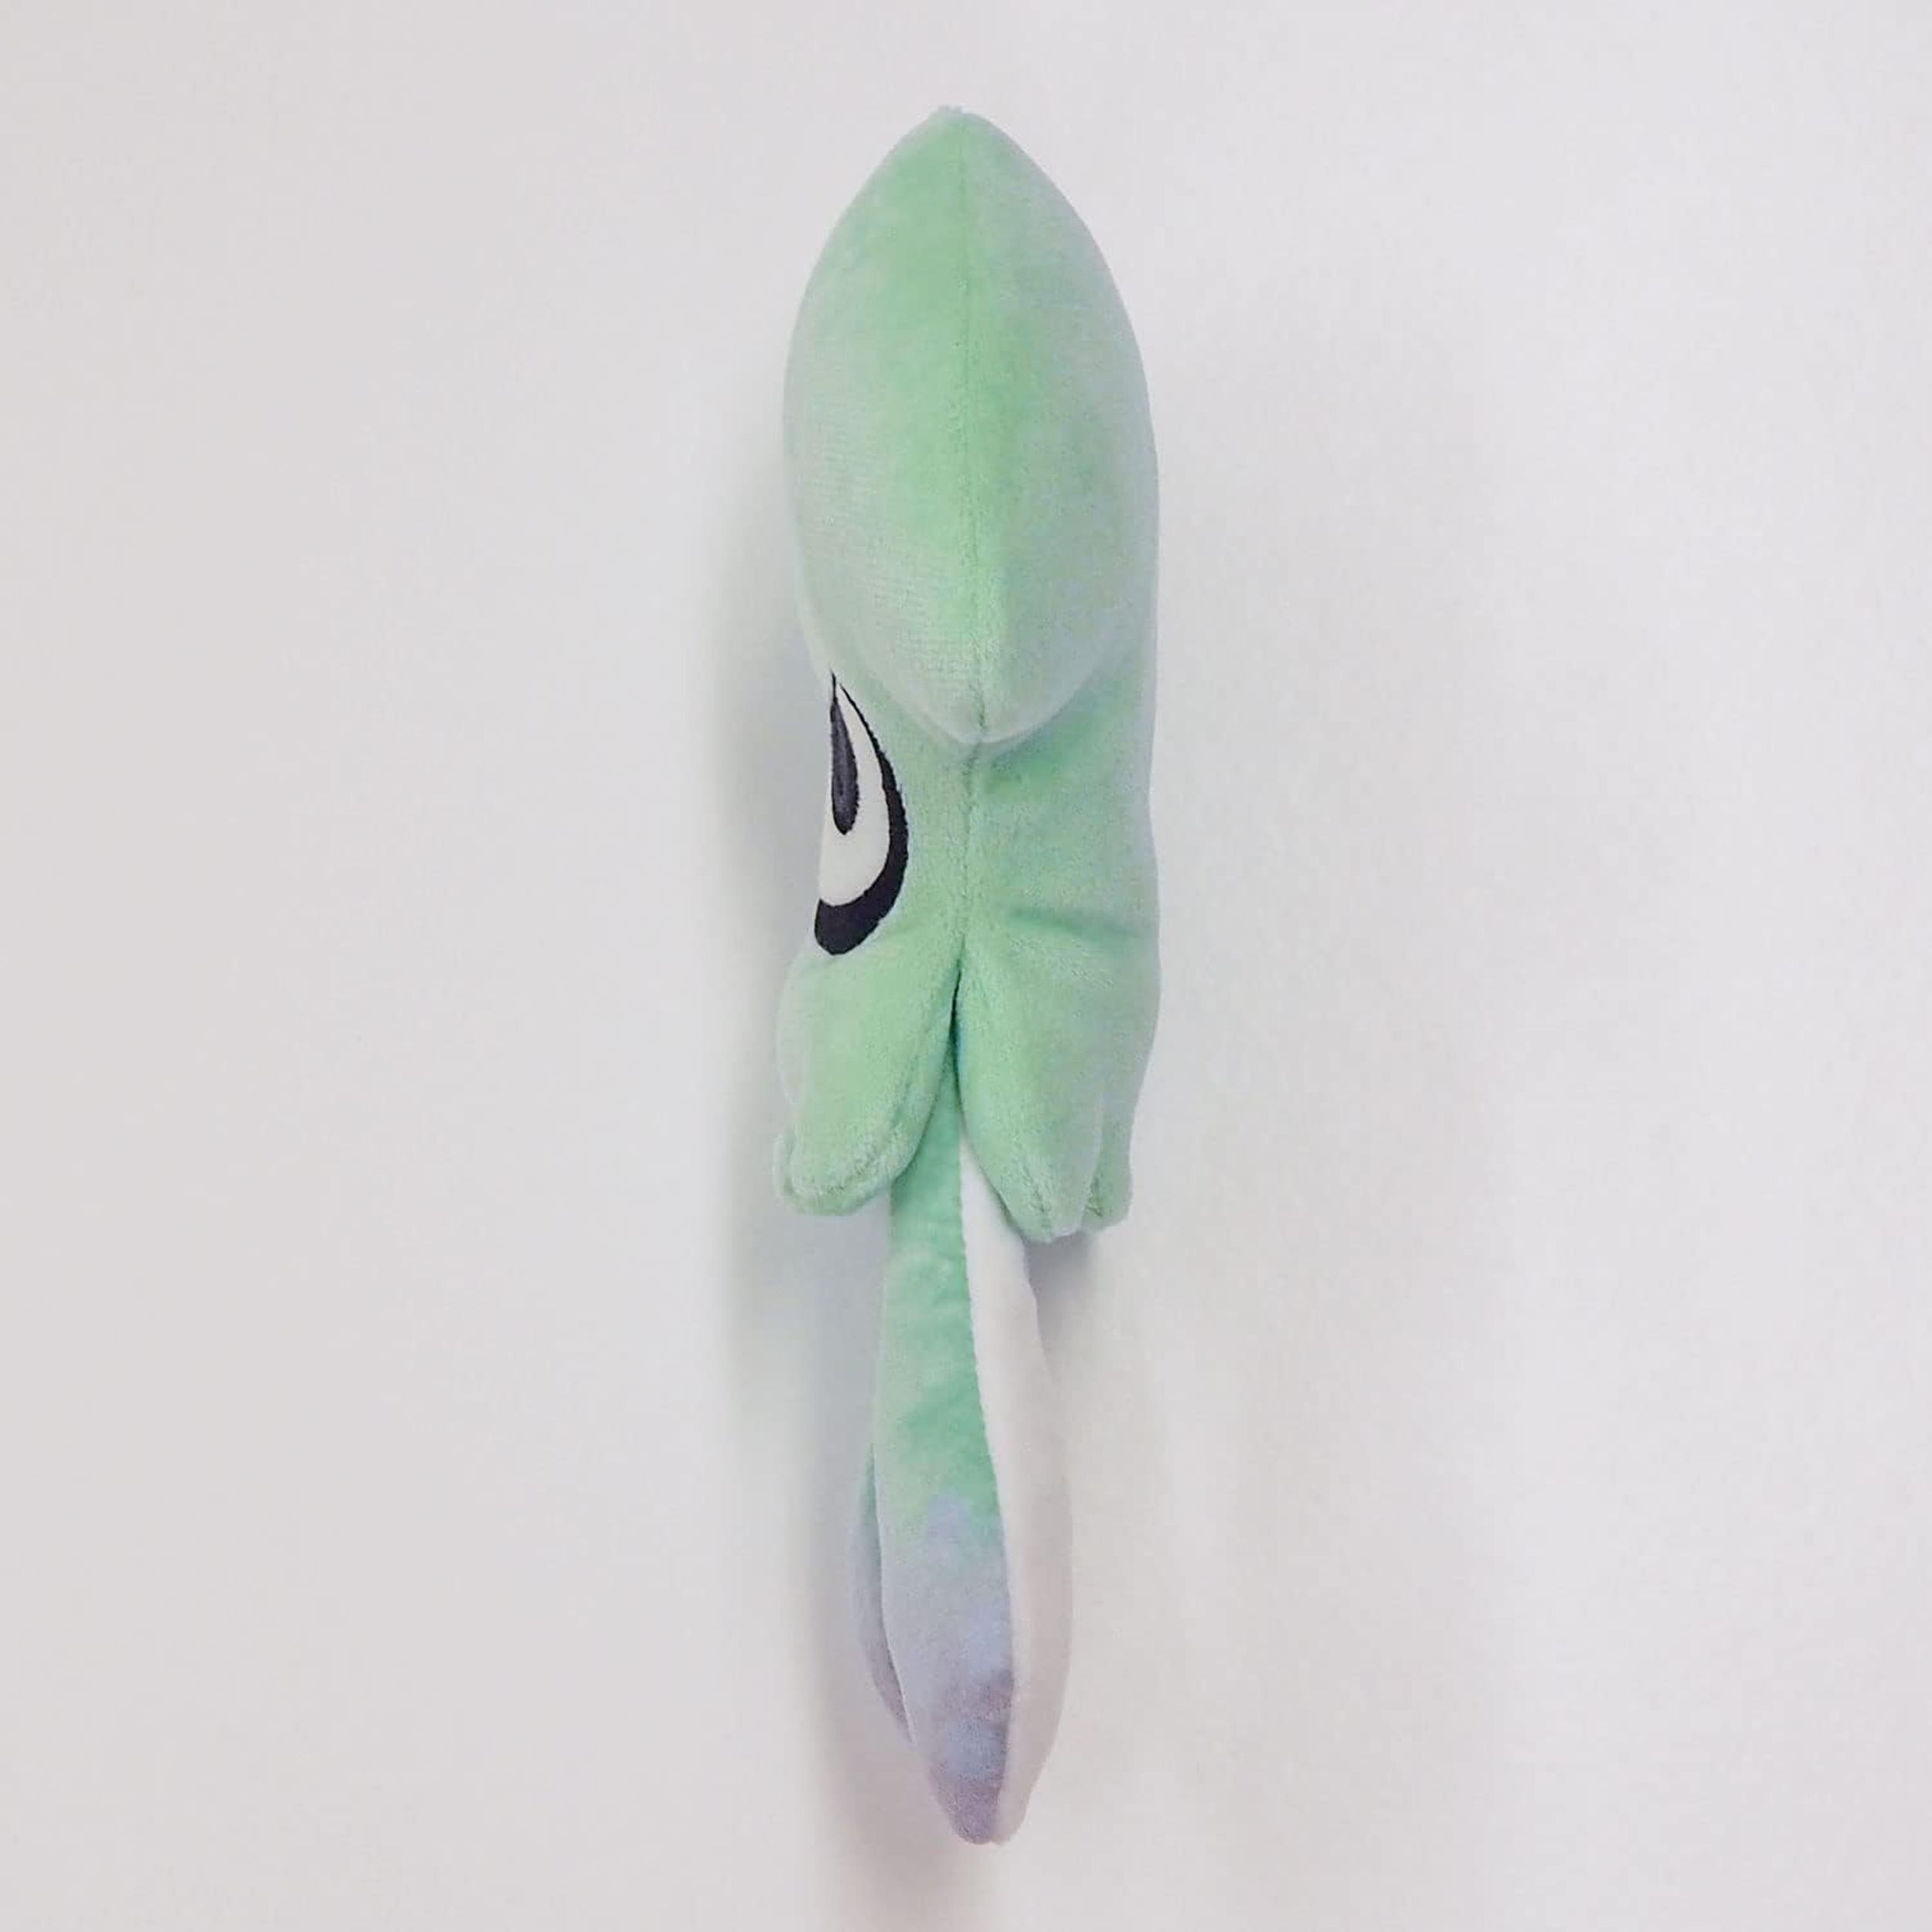 Squid NINTENDO Plüschfigur blau Splatoon